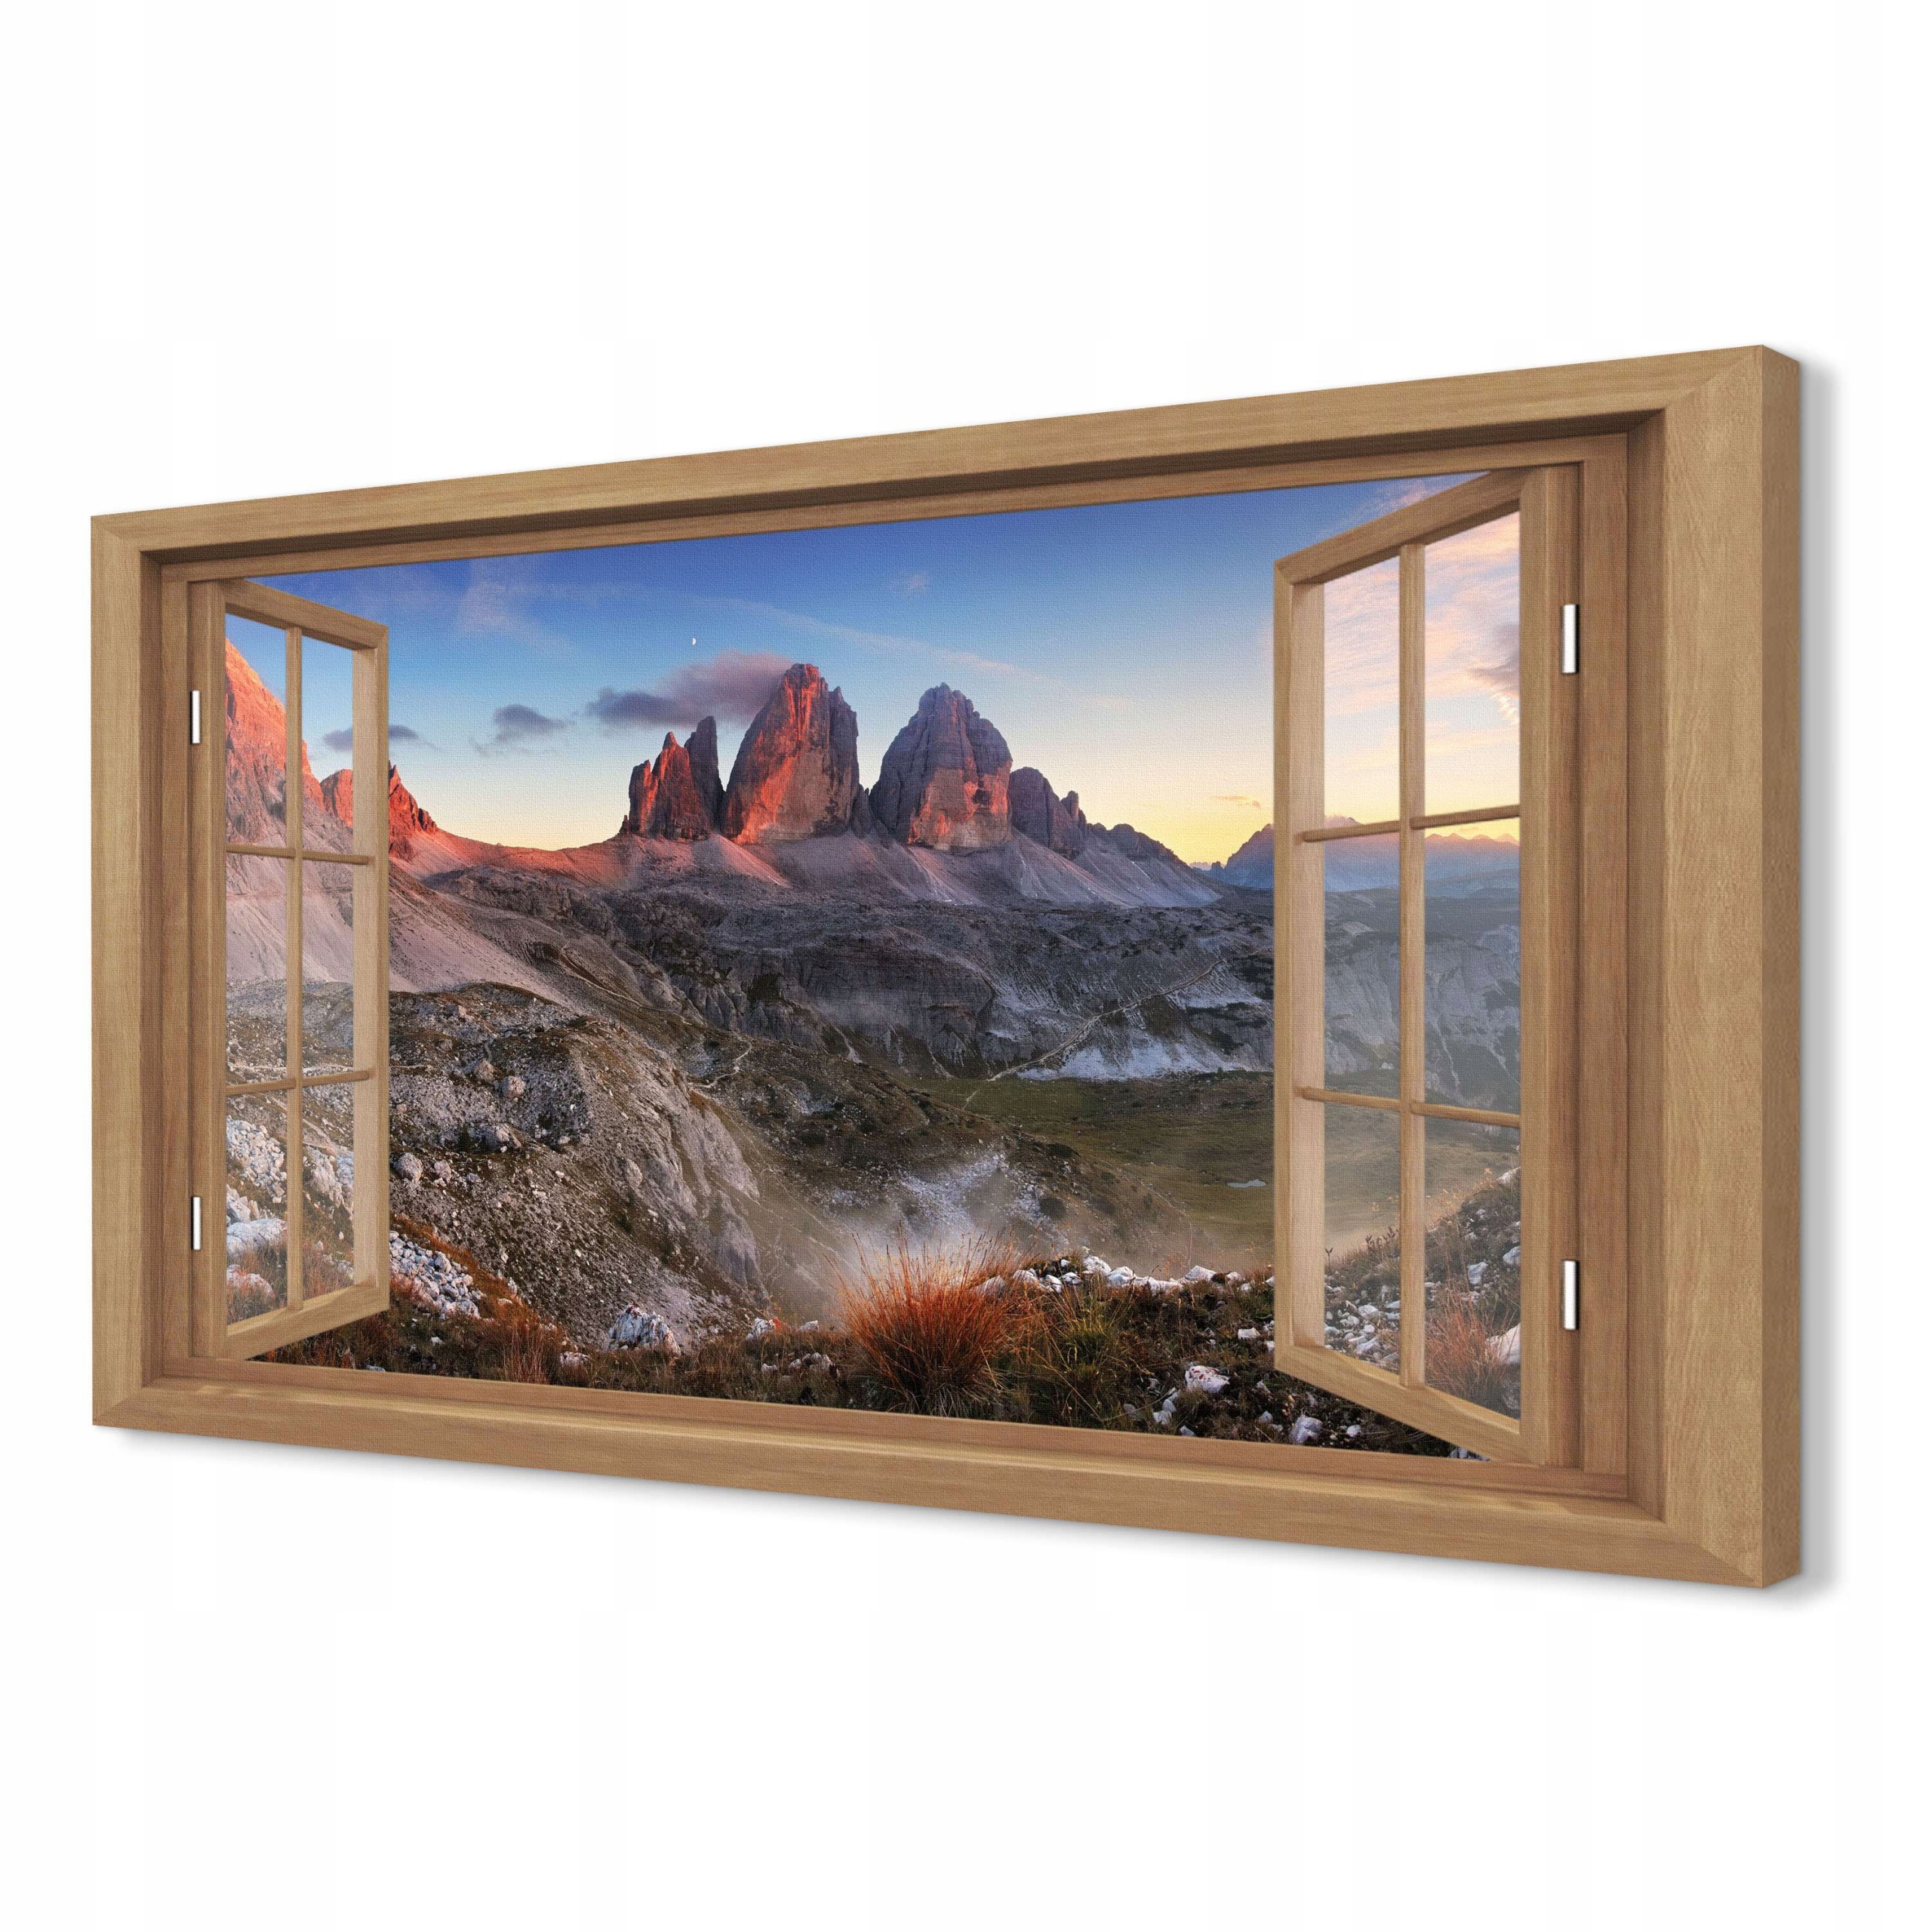 

Obraz okno 3d 120x80 do biura Góry skały Dolomity